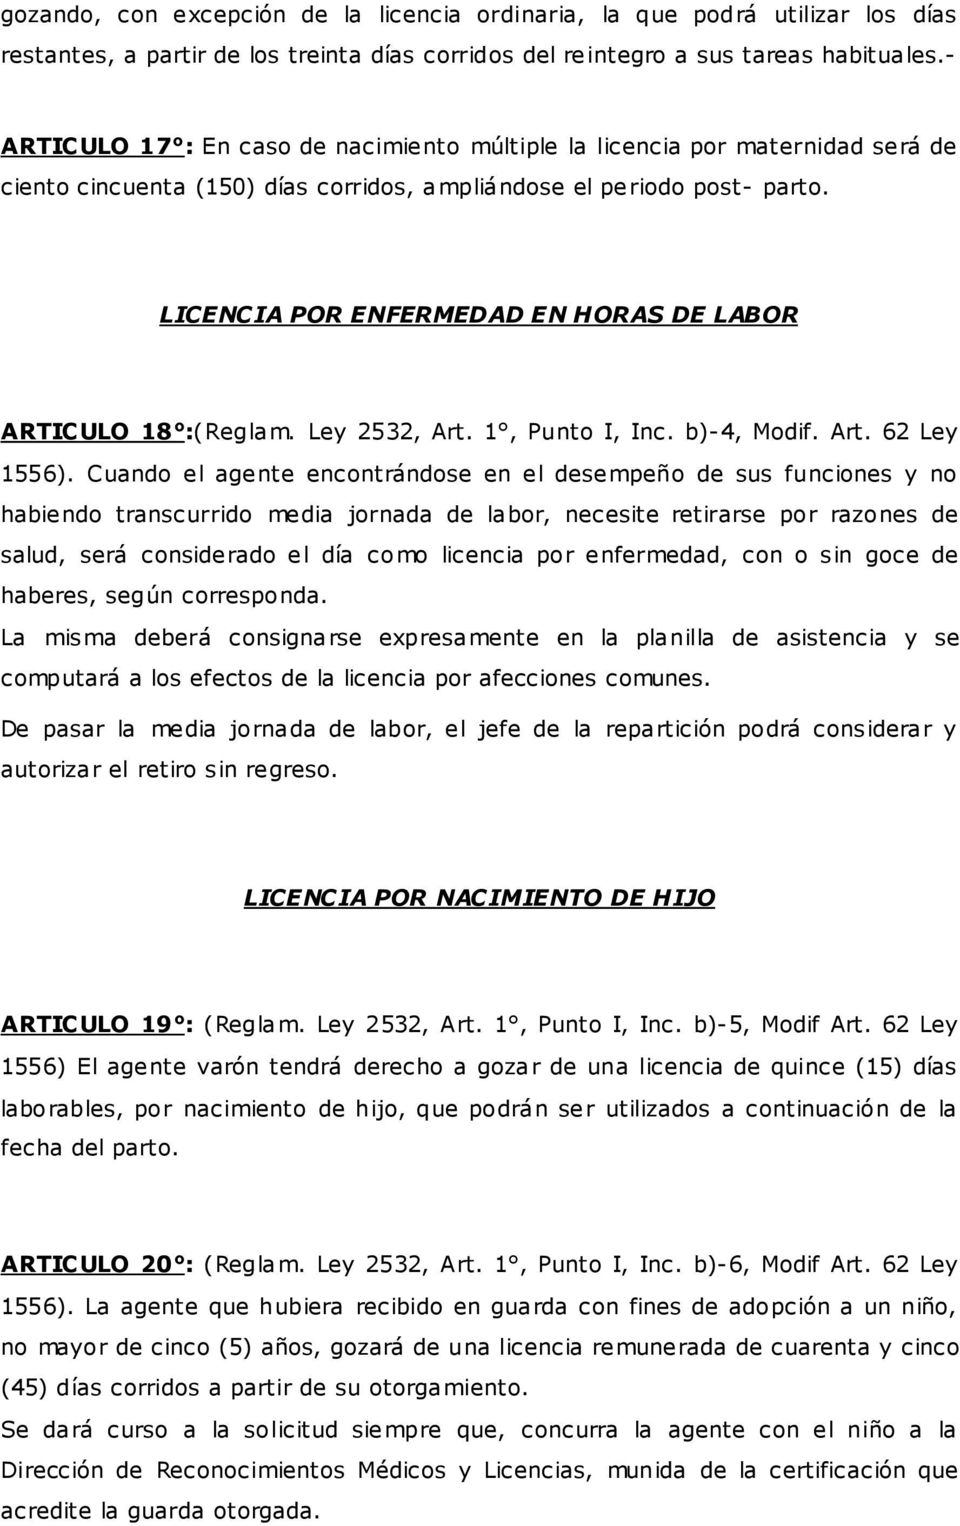 LICENCIA POR ENFERMEDAD EN HORAS DE LABOR ARTICULO 18 :(Reglam. Ley 2532, Art. 1, Punto I, Inc. b)-4, Modif. Art. 62 Ley 1556).